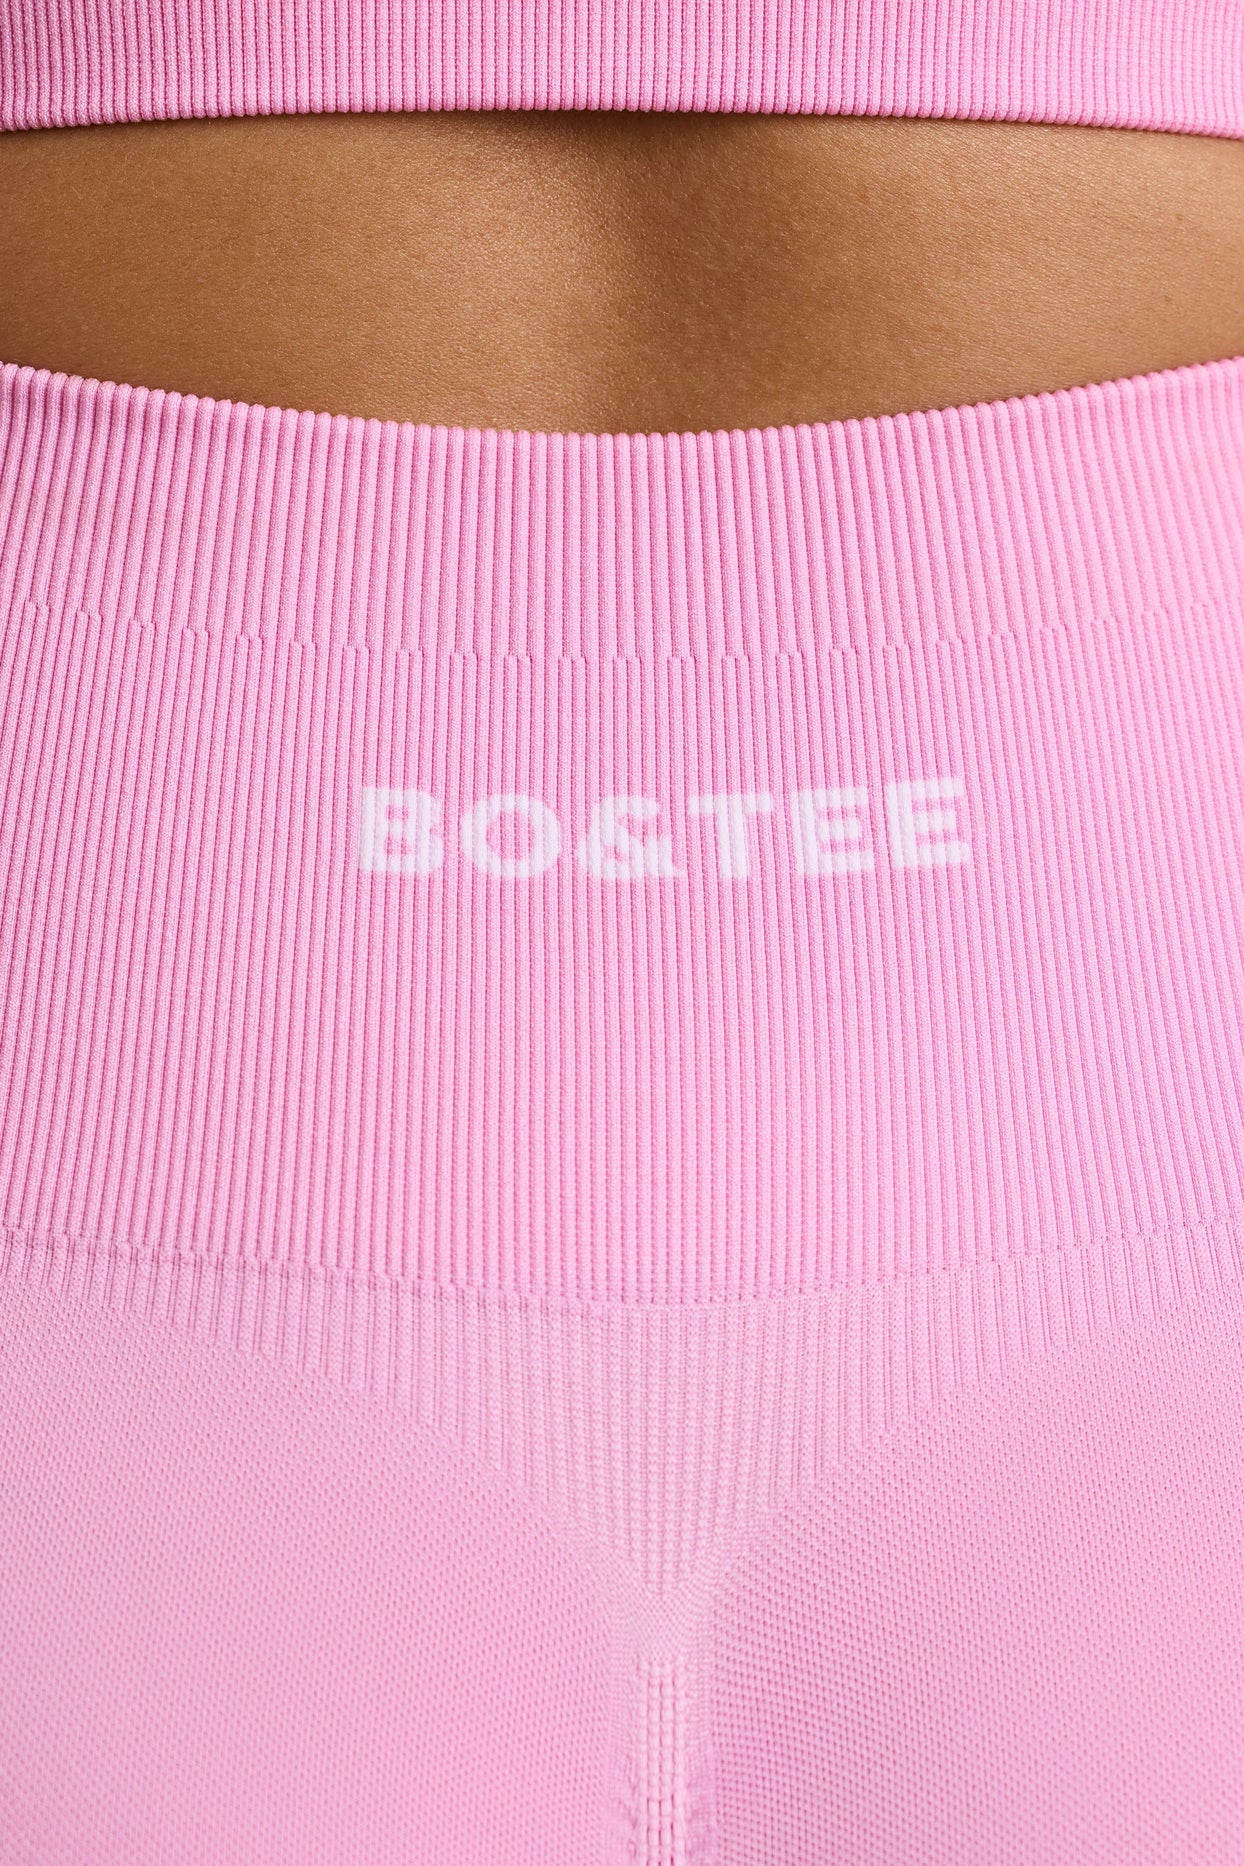 High-Waist Define Luxe Mini Shorts in Bubblegum Pink